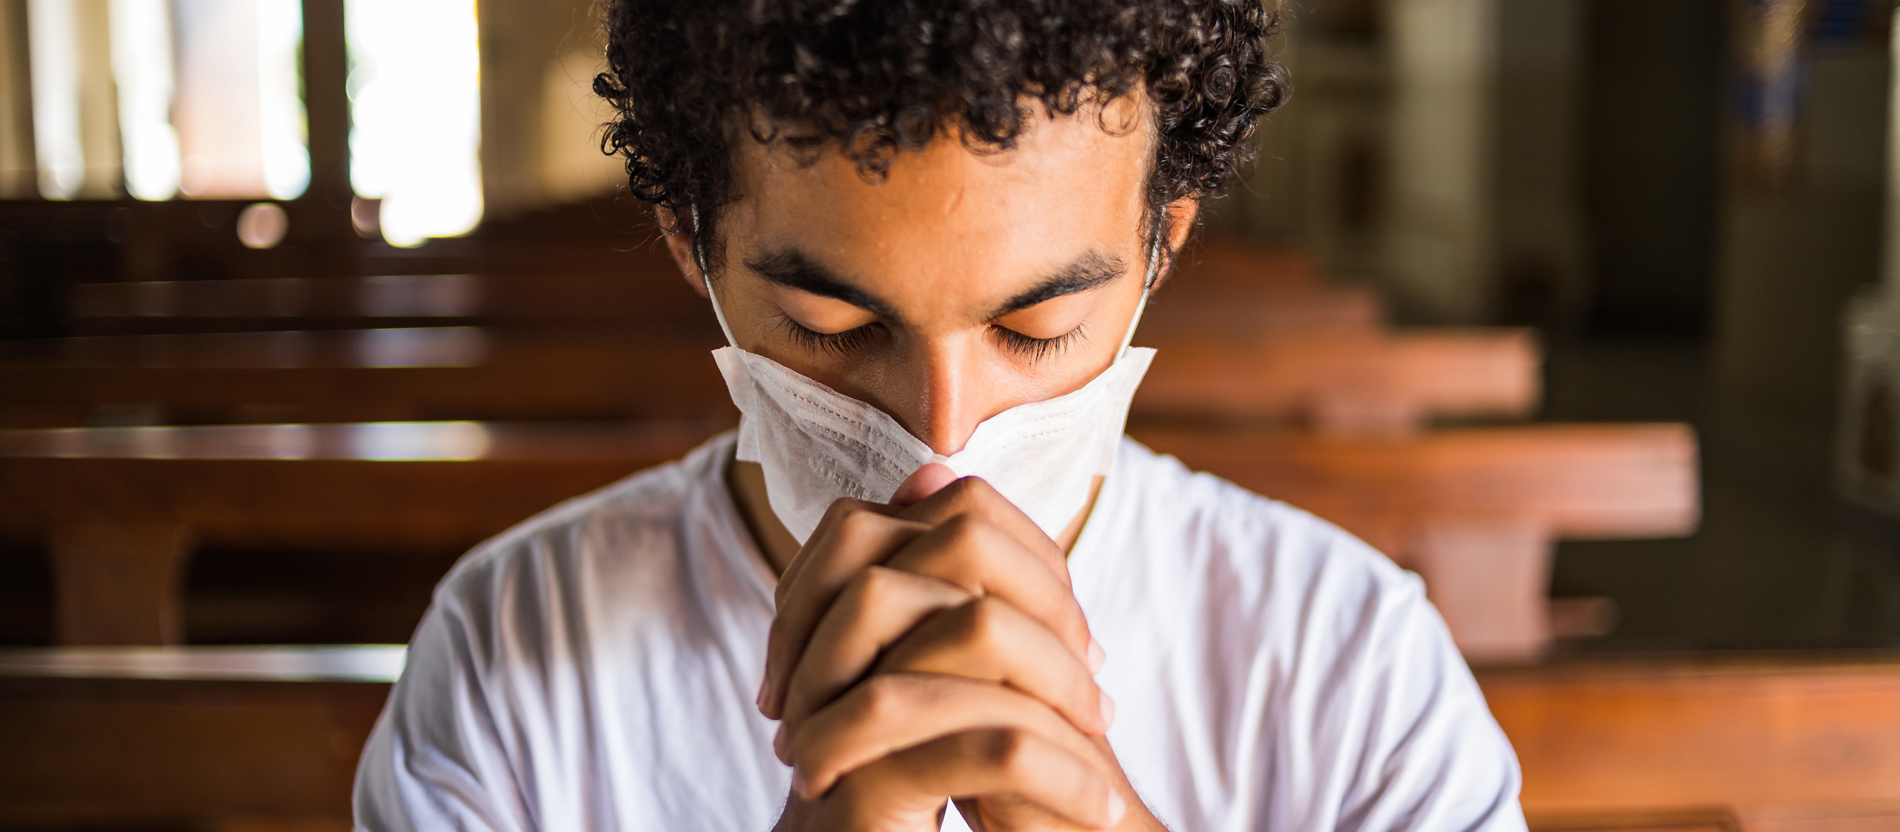 Jovem reza em igreja utilizando máscara de proteção.